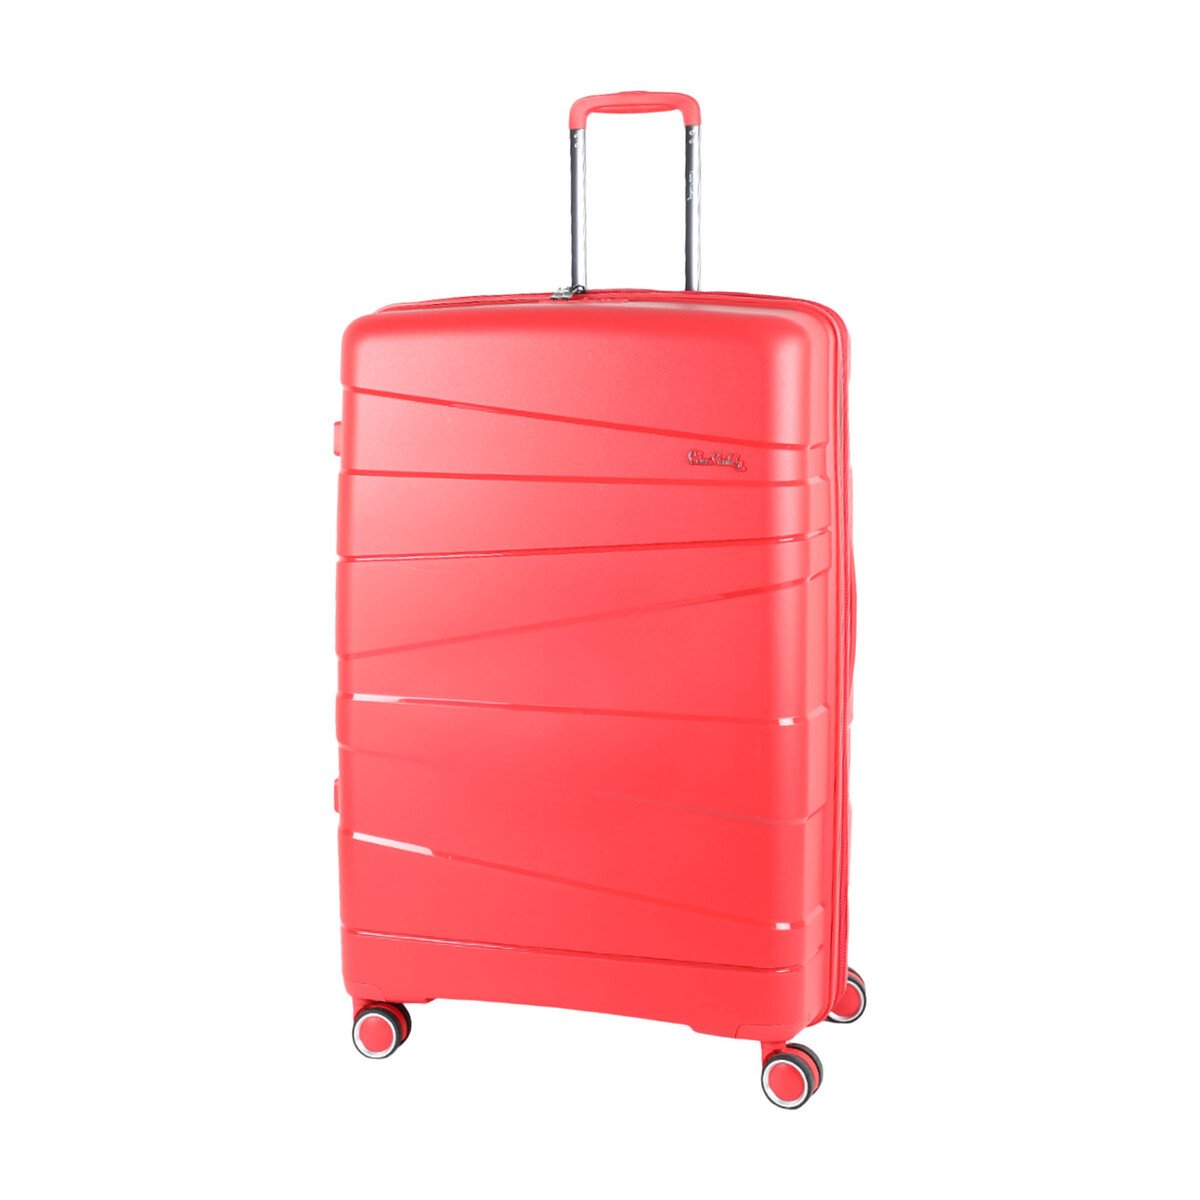 بيير كاردين زيورخ حقيبة سفر صلبة بـ4 عجلات 30 انش أحمر